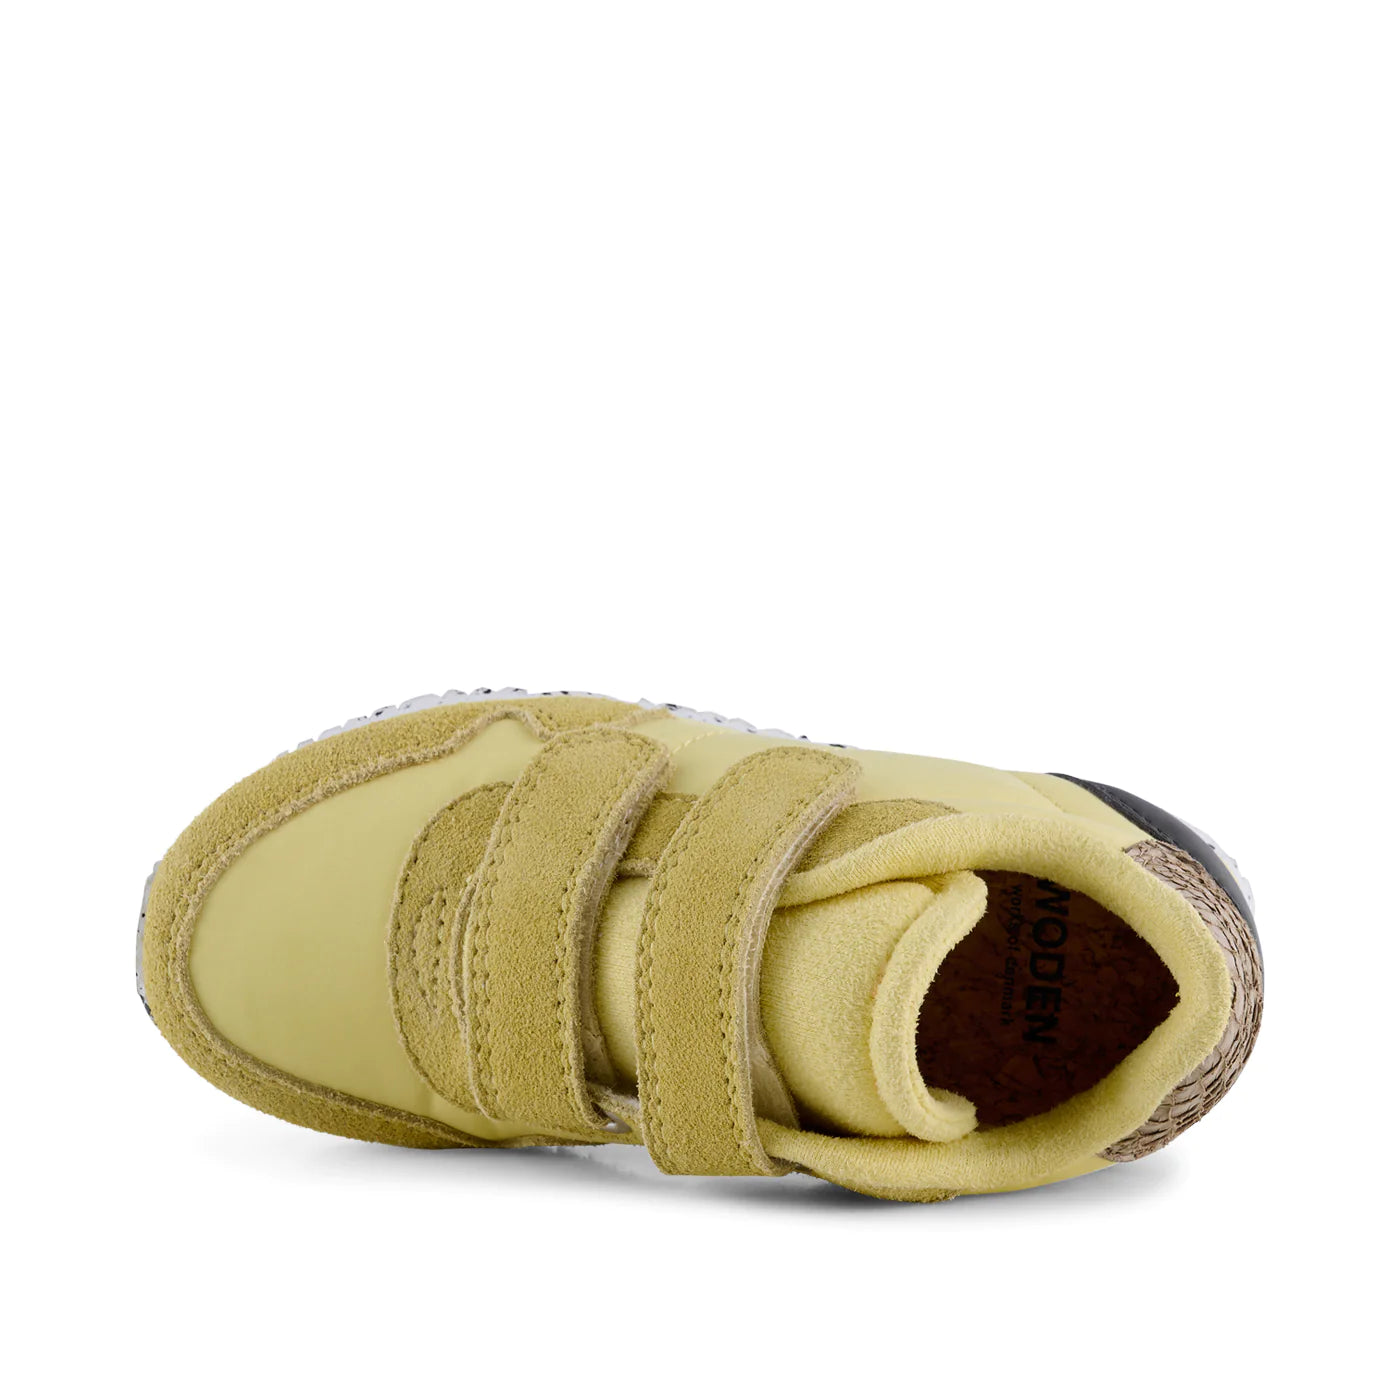 Nor Suede - Banana - Sneakers